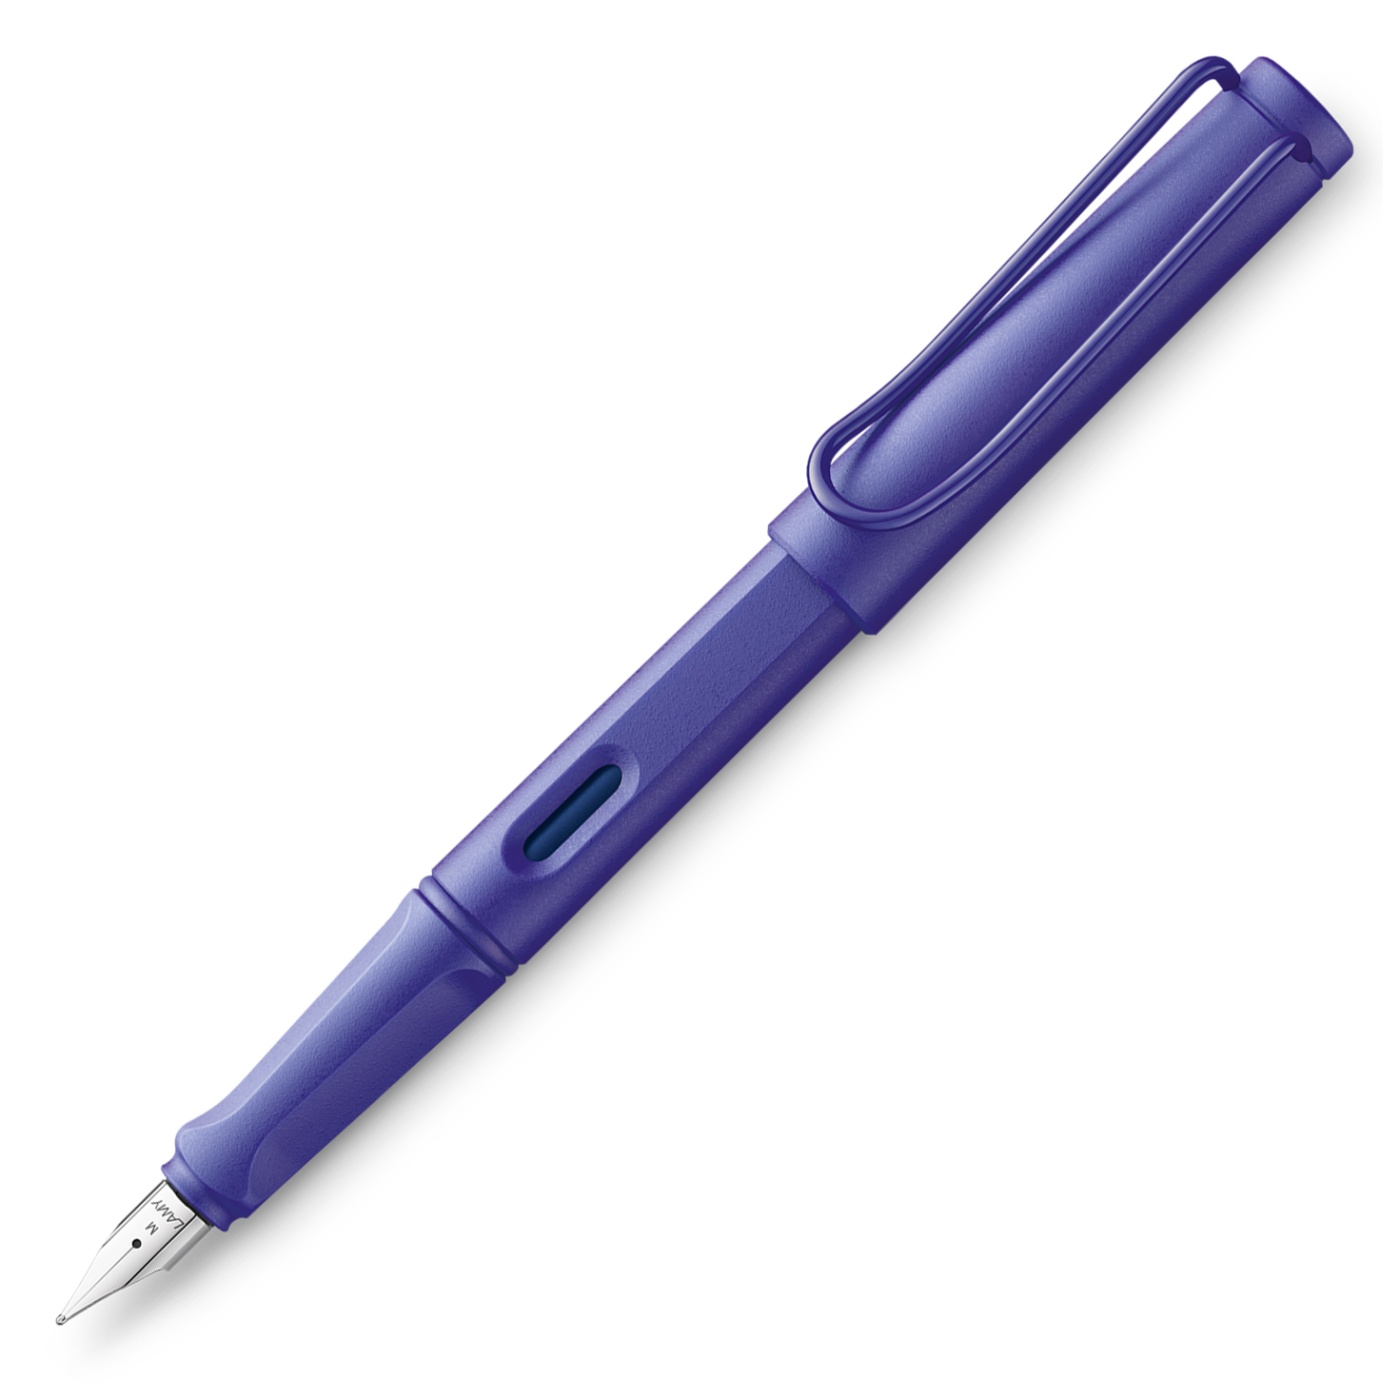 Safari Füllfederhalter Candy Violet in der Gruppe Stifte / Fine Writing / Füllfederhalter bei Pen Store (102127_r)